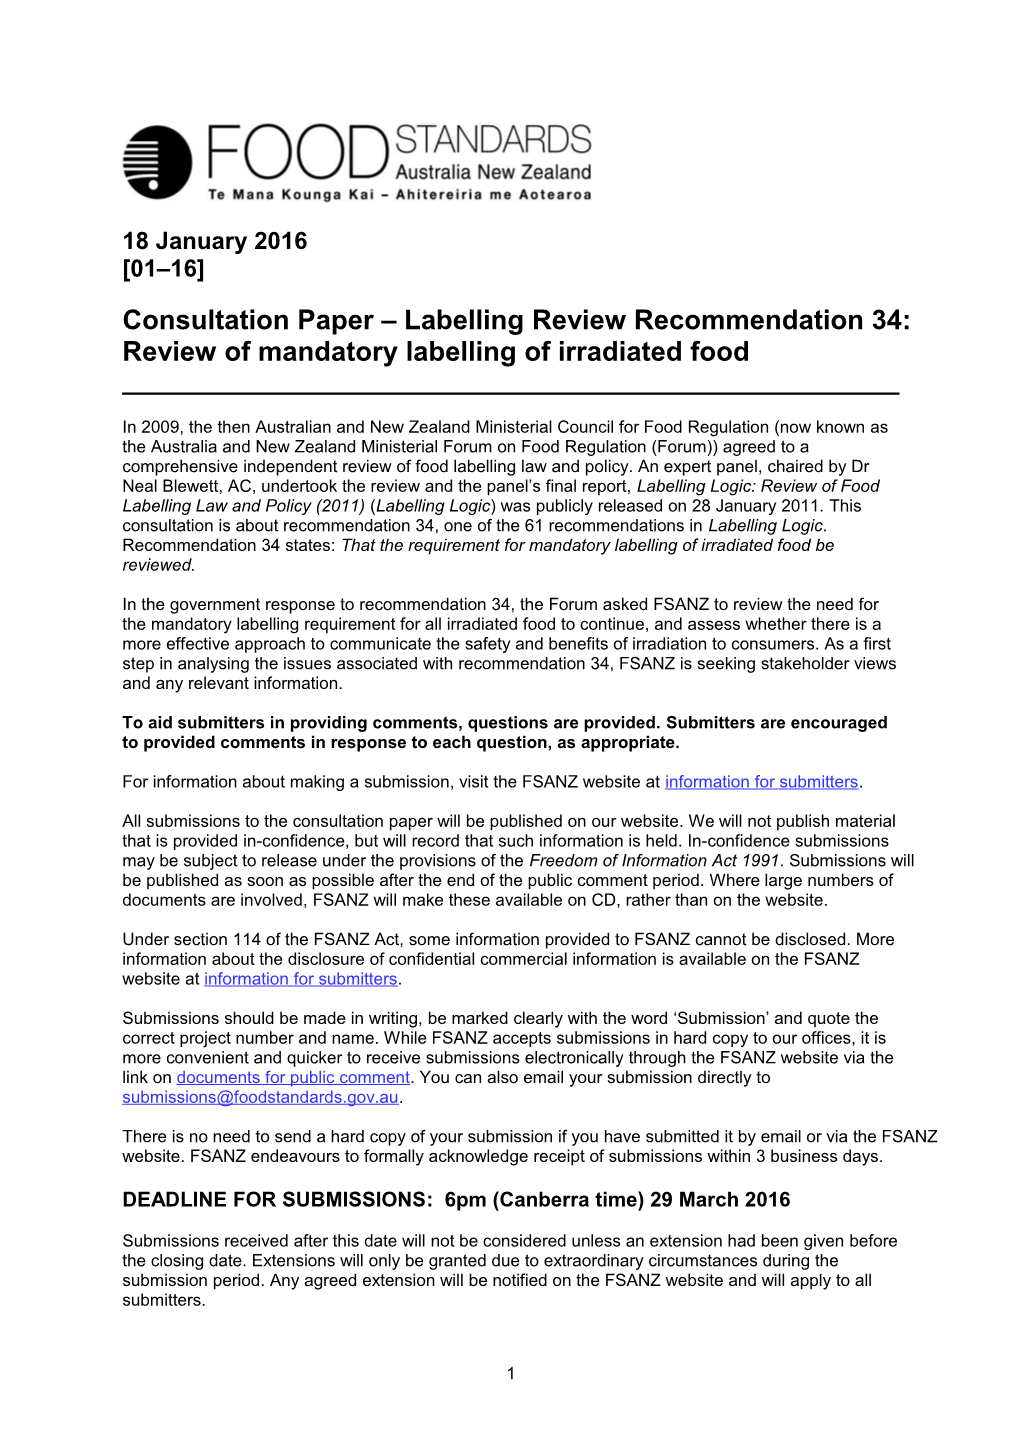 LR 34 Consultation Paper 2016